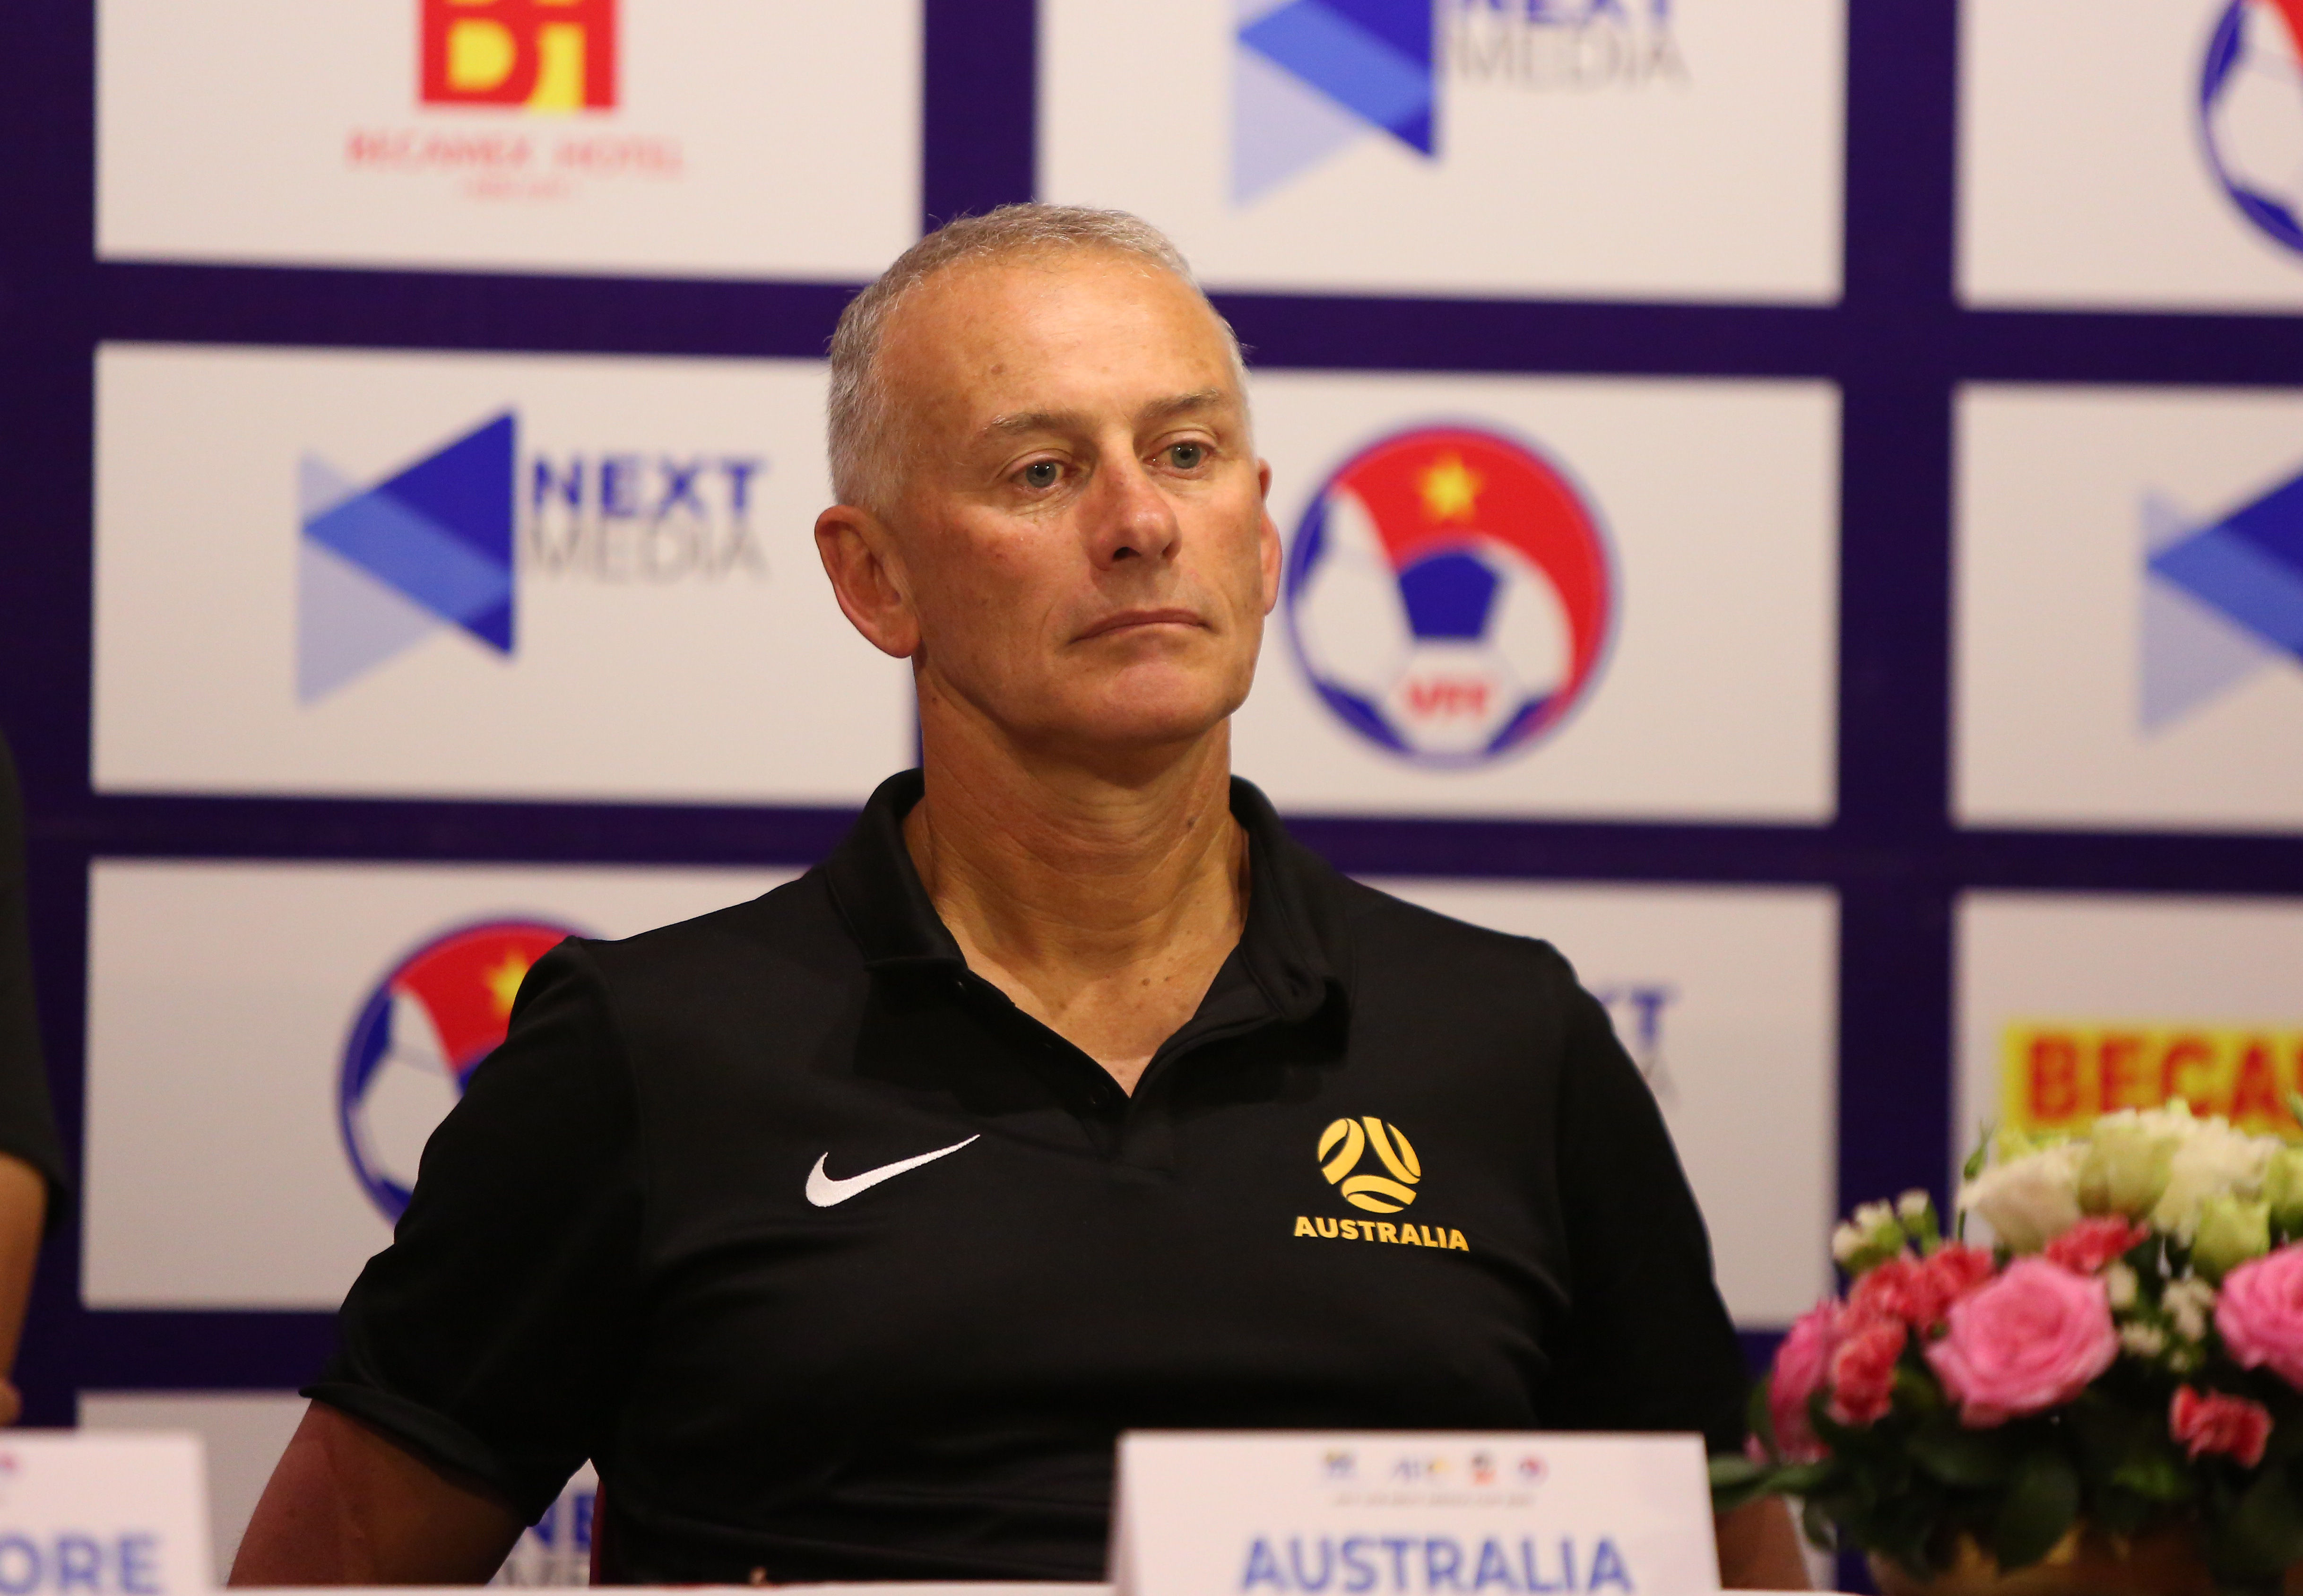 Đánh bại U18 Việt Nam 3-1, HLV Australia nói điều bất ngờ về học trò Hoàng Anh Tuấn - Bóng Đá